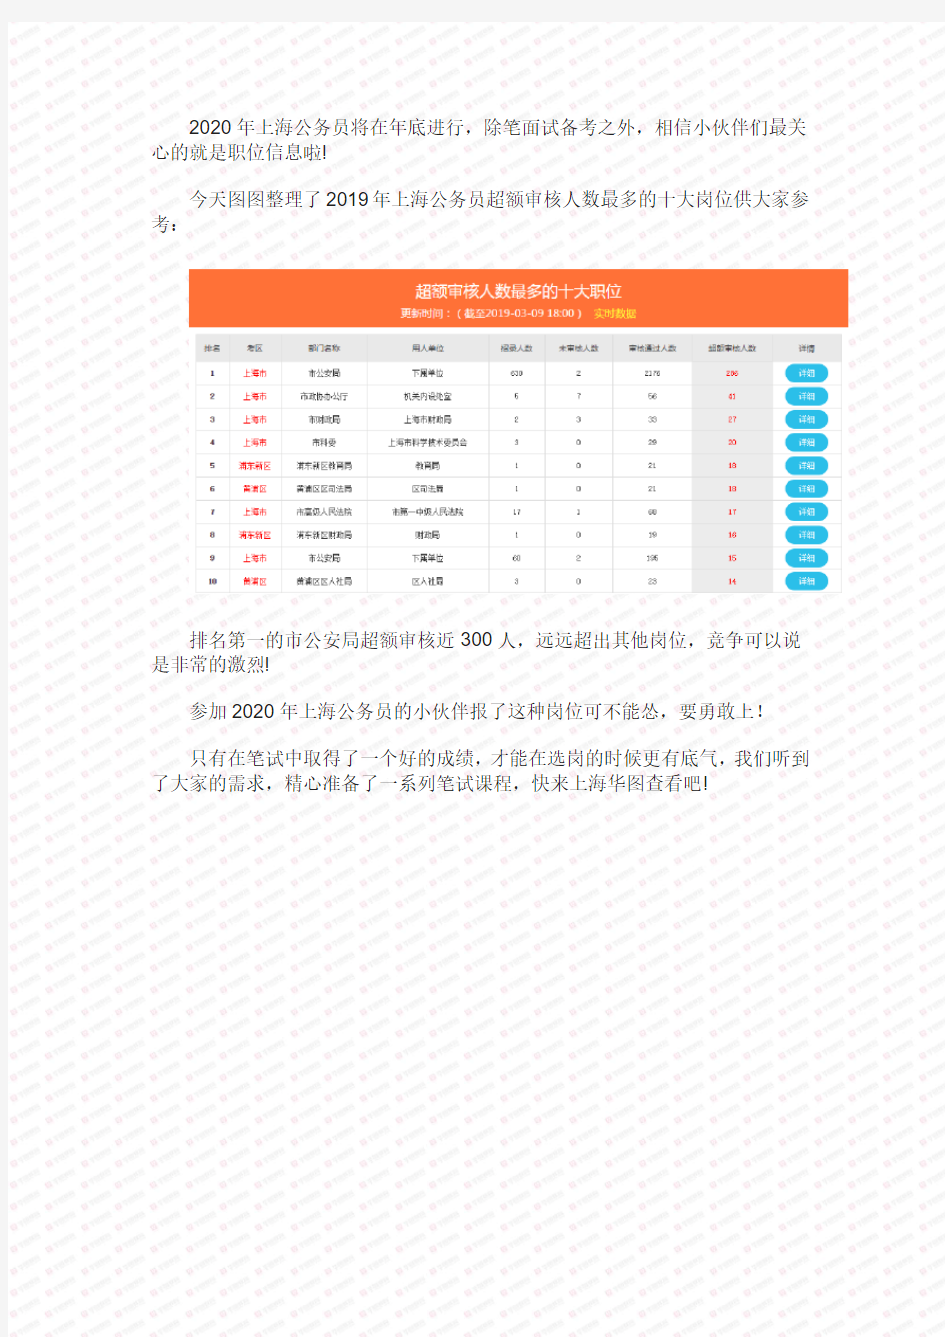 2020上海公务员超额审核人数最多的十大岗位,竞争就是这么激烈!